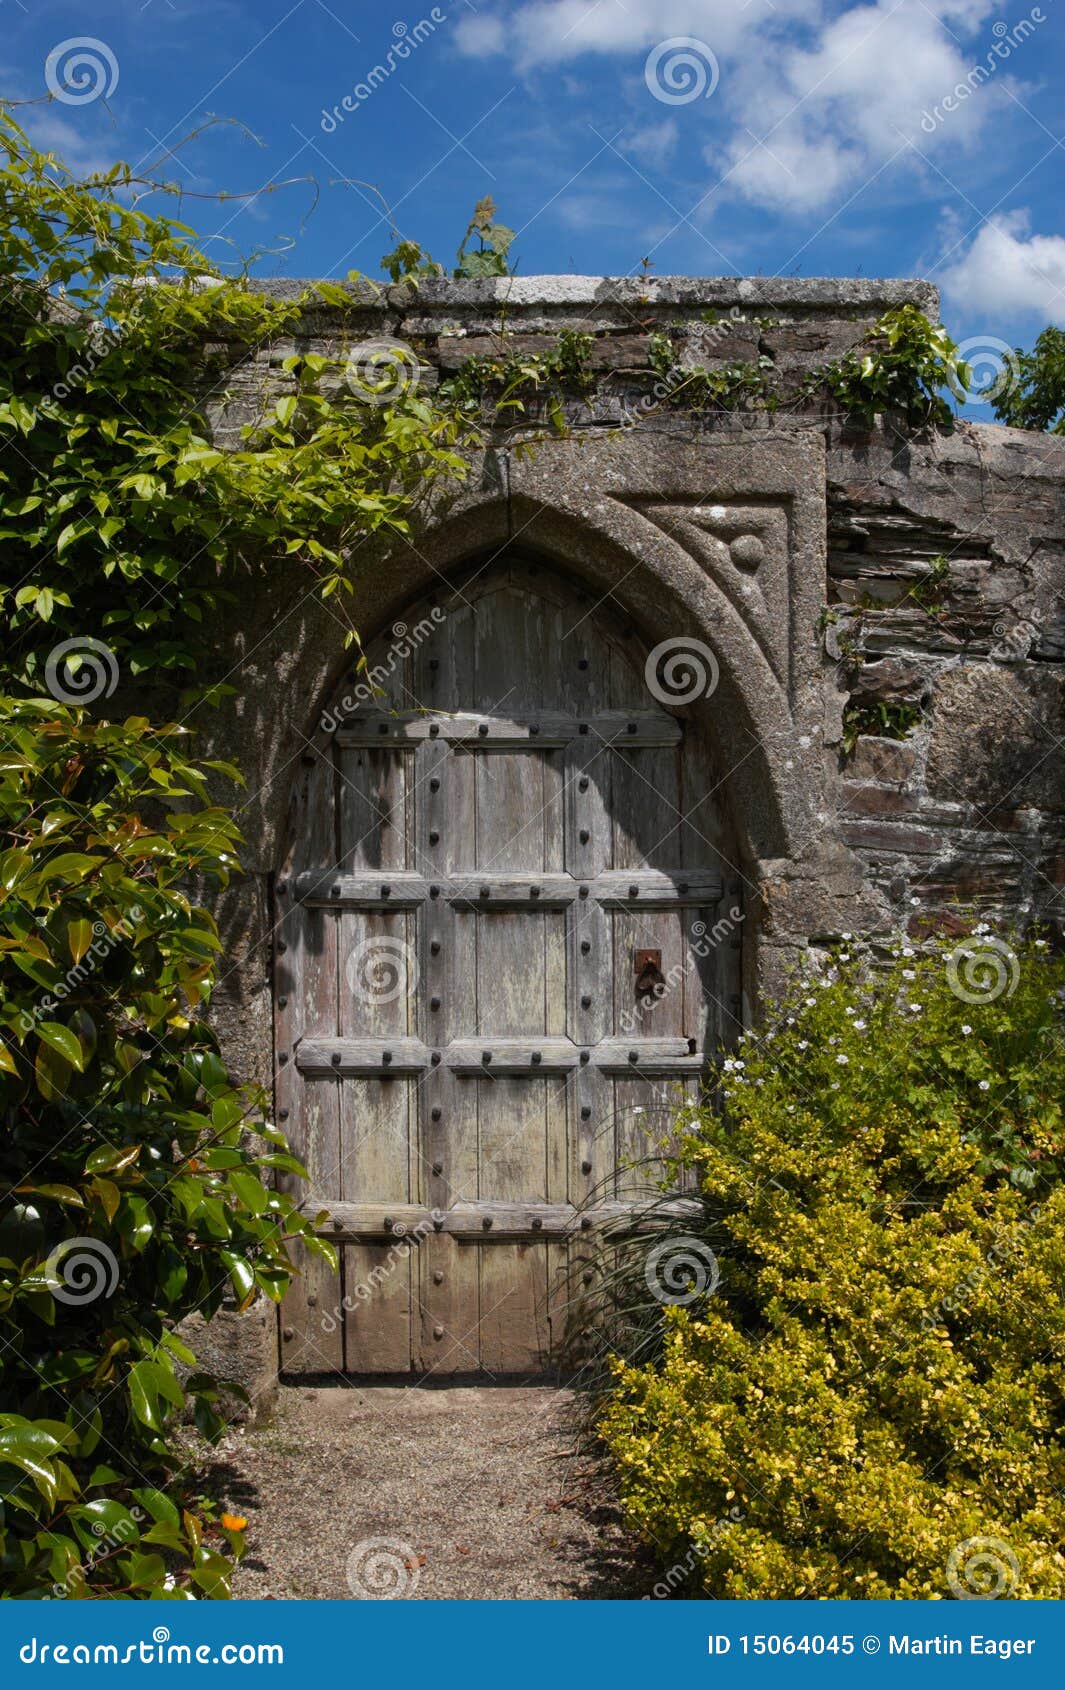 Secret Door To The Magic Garden Stock Image - Image: 15064045